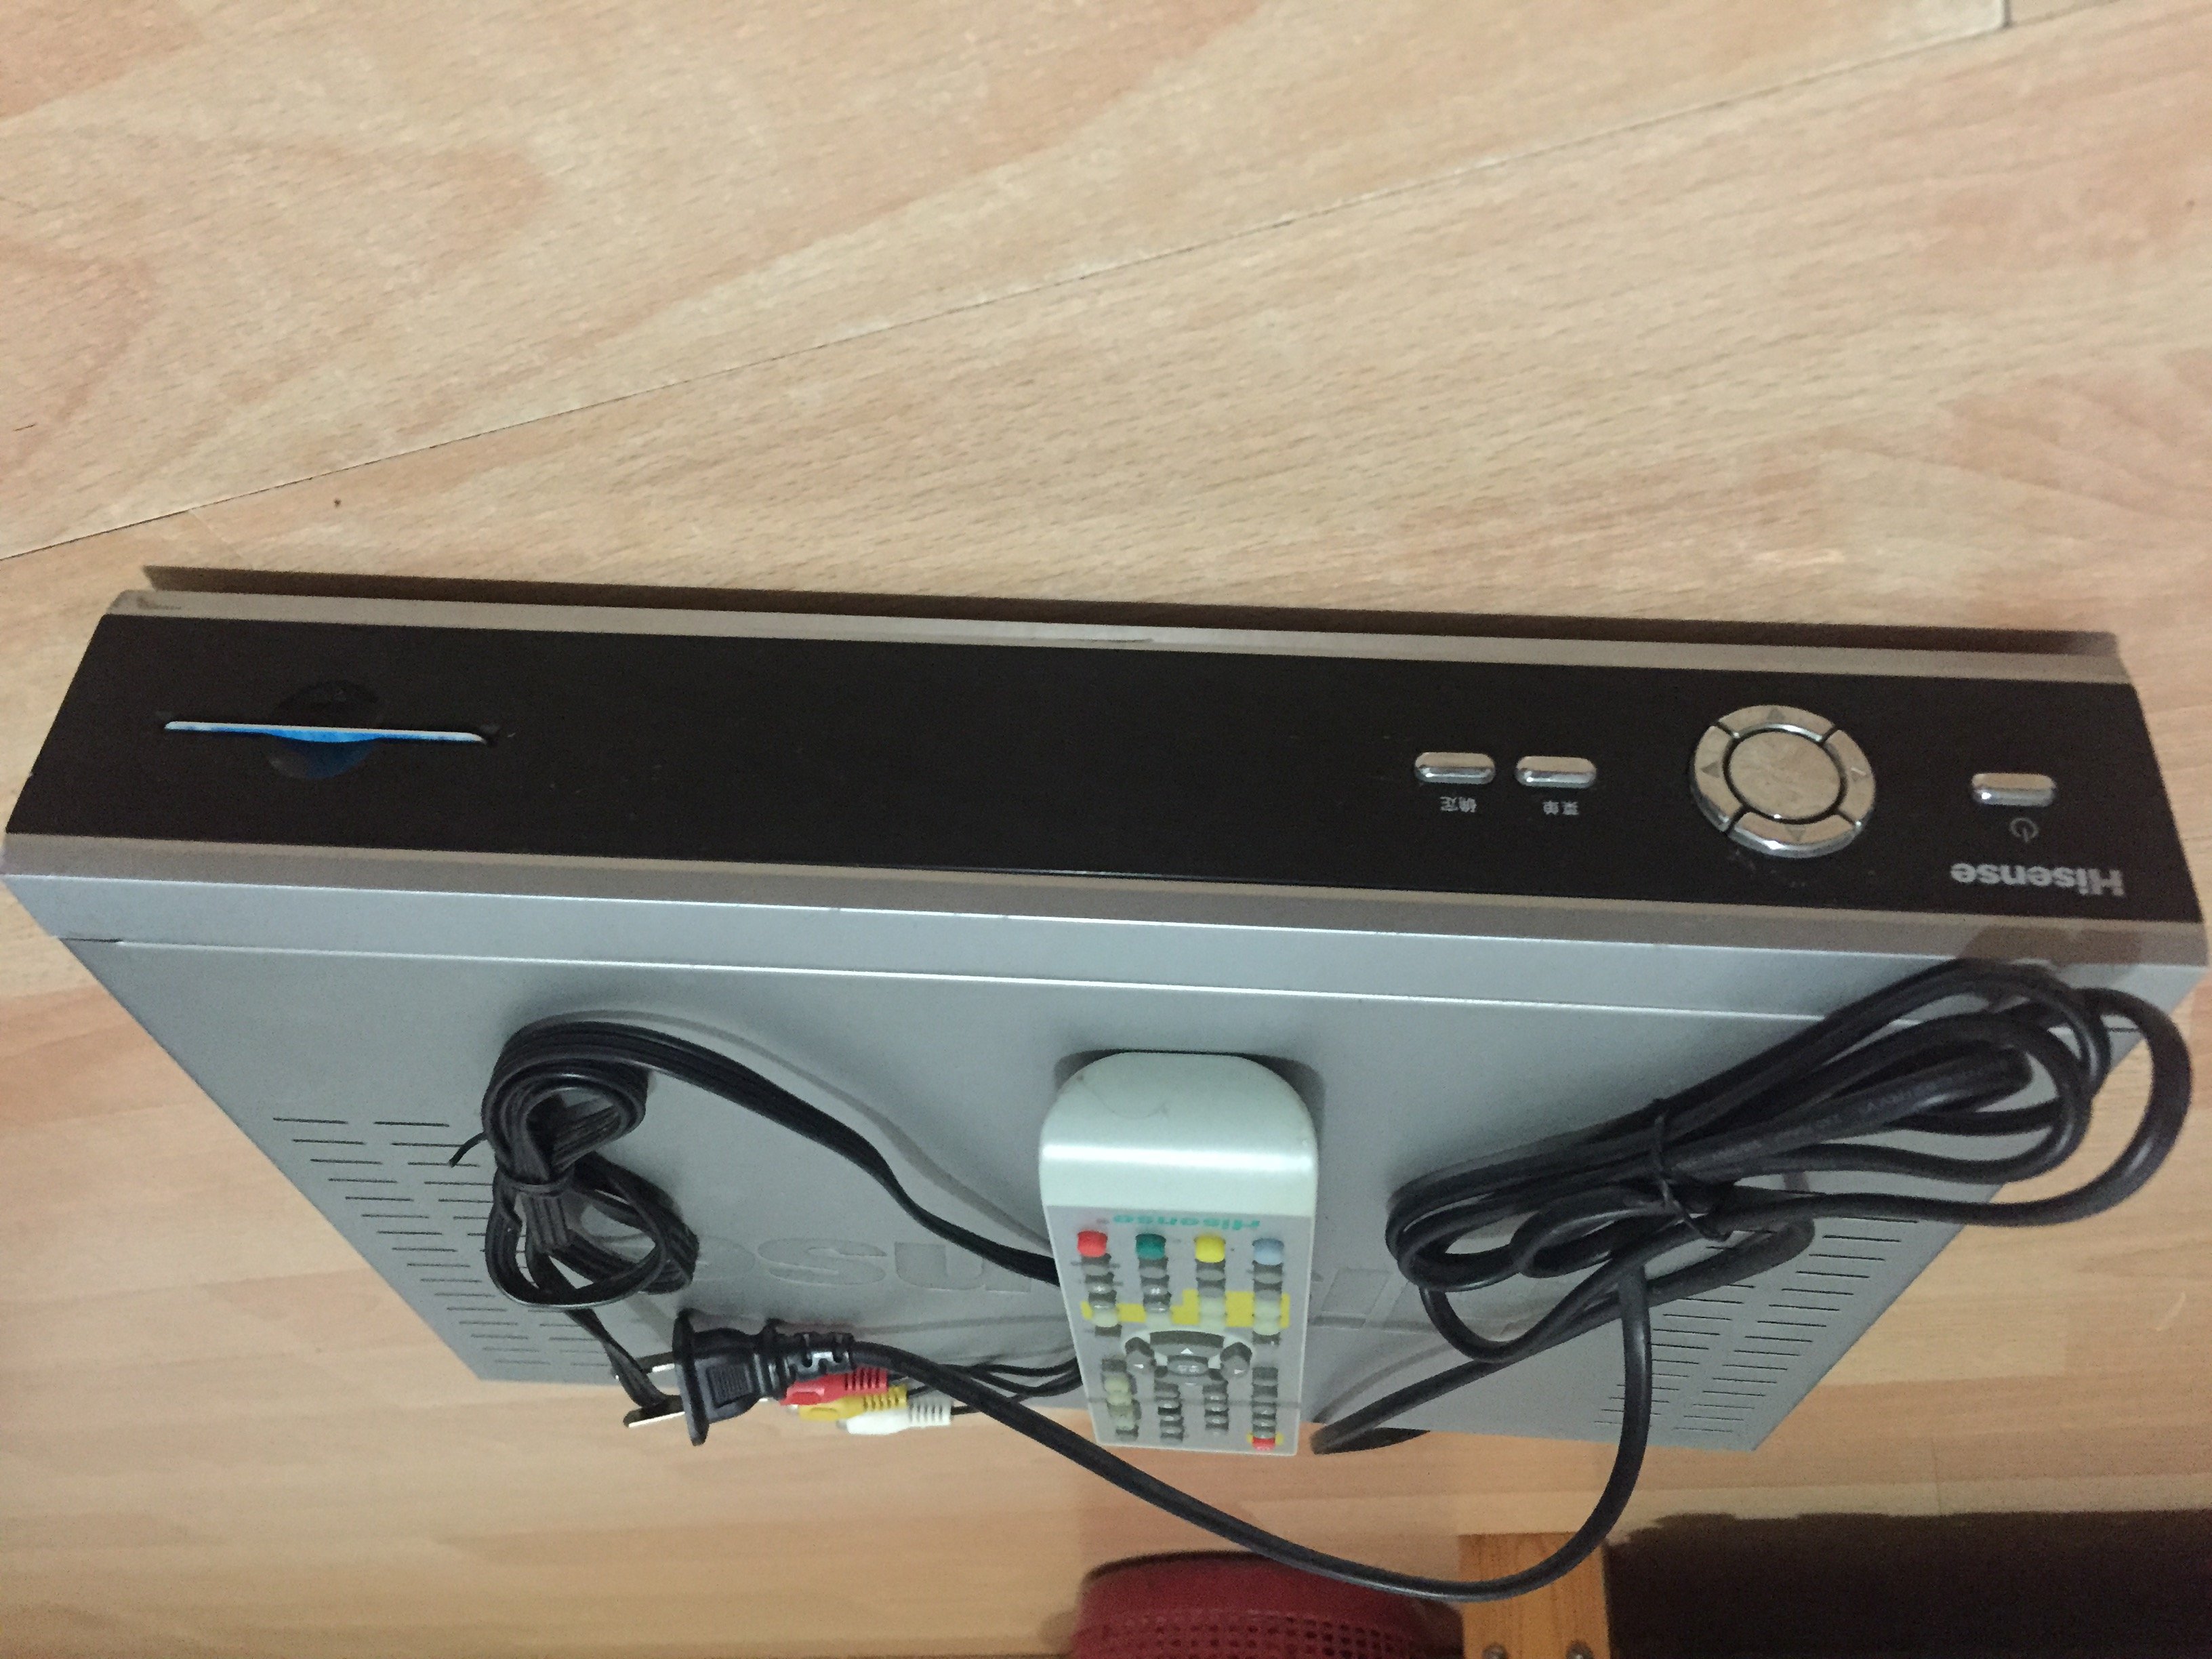 海信机顶盒(ip706h)要输入业务账号和密码-海信机顶盒遥控器学习